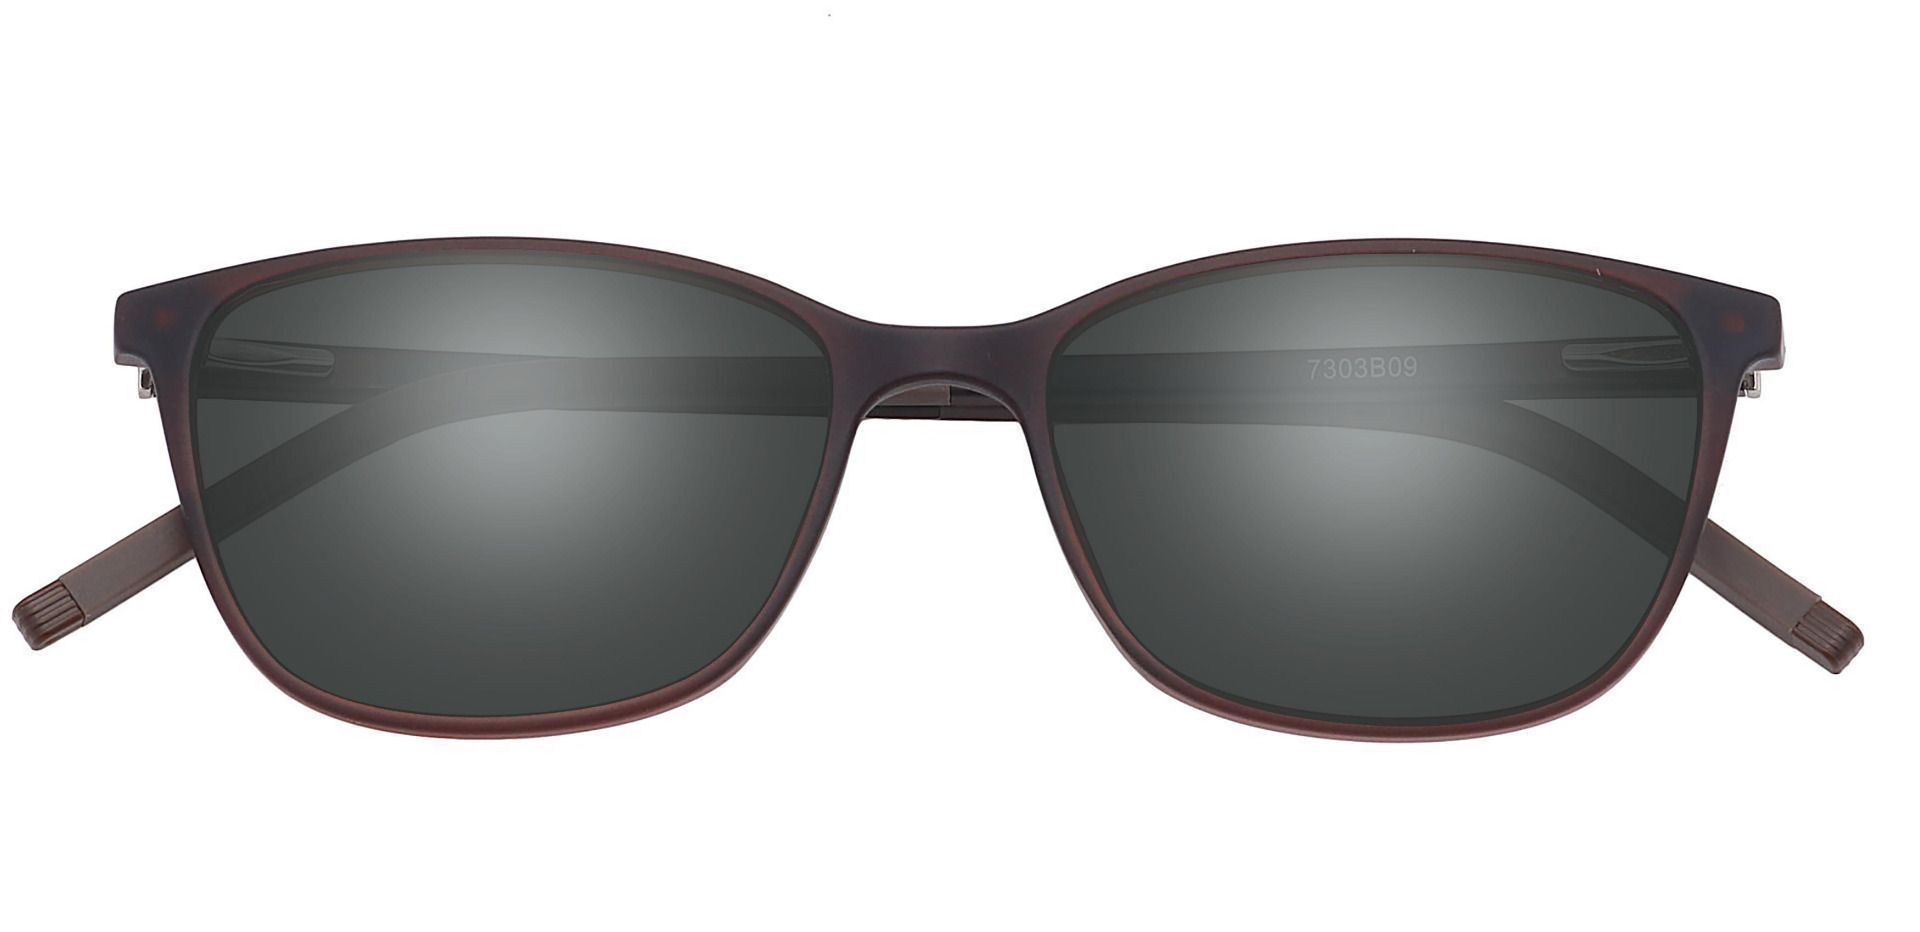 Danica Square Prescription Sunglasses - Gray Frame With Brown Lenses ...